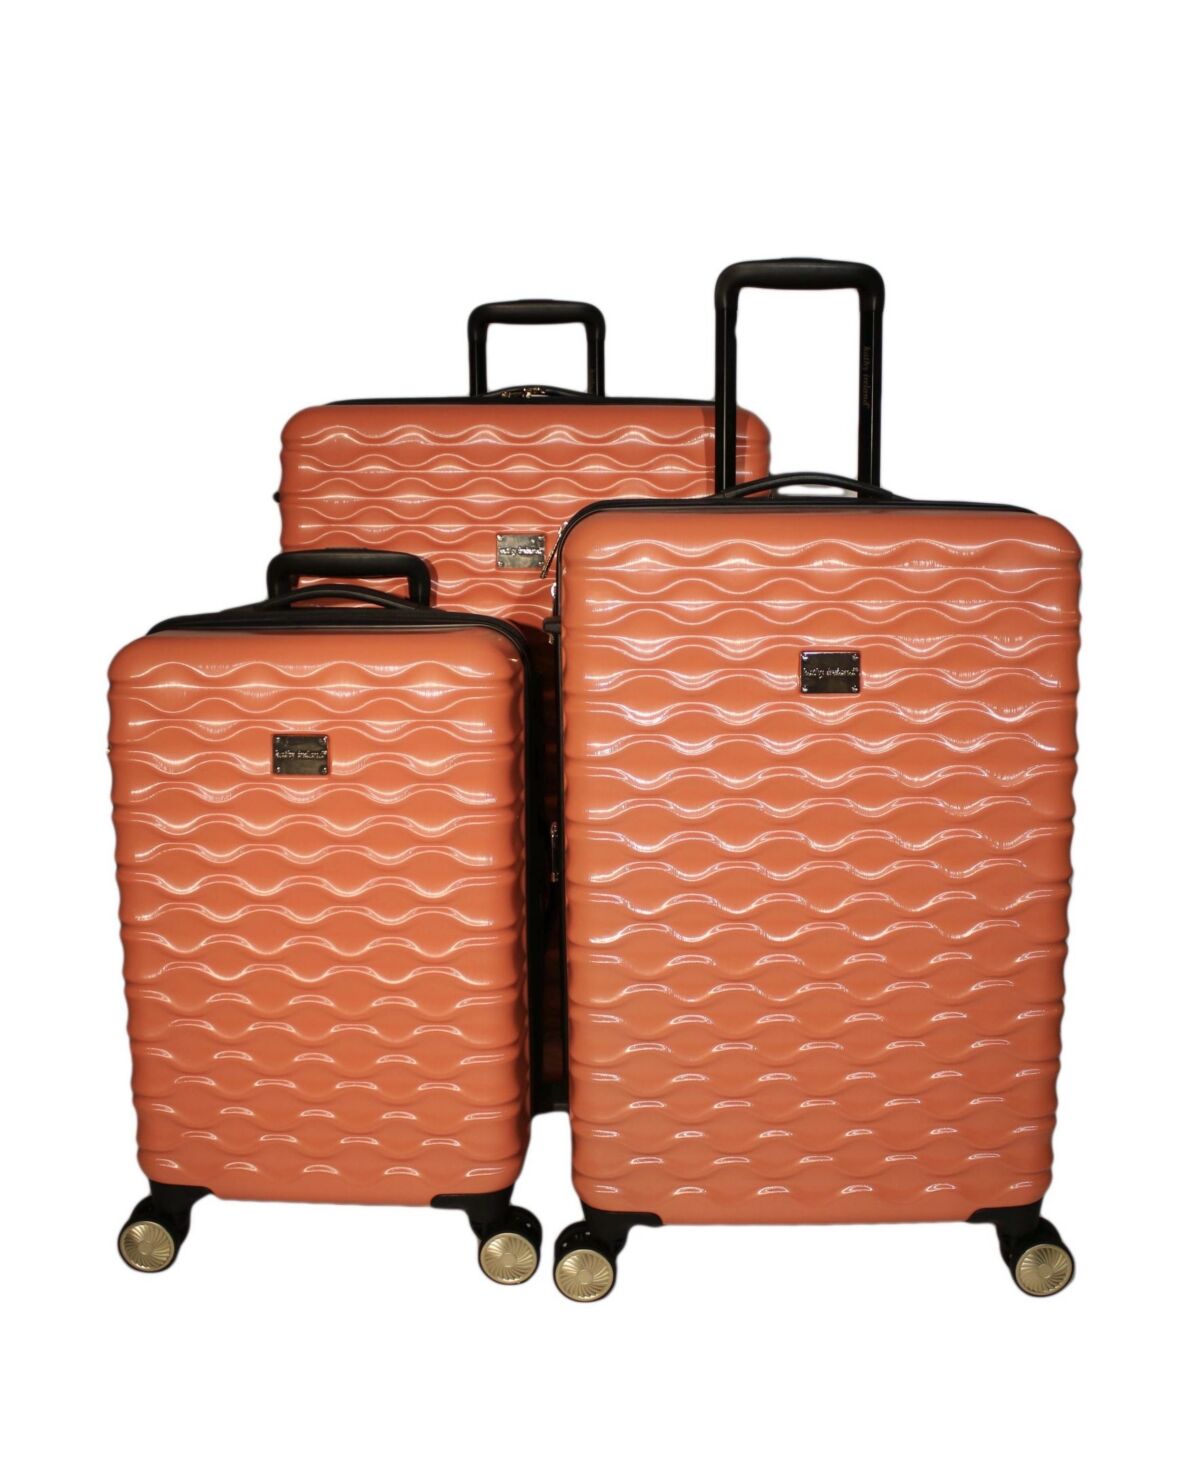 Kathy Ireland Maisy 3 Piece Hardside Luggage Set - Coral